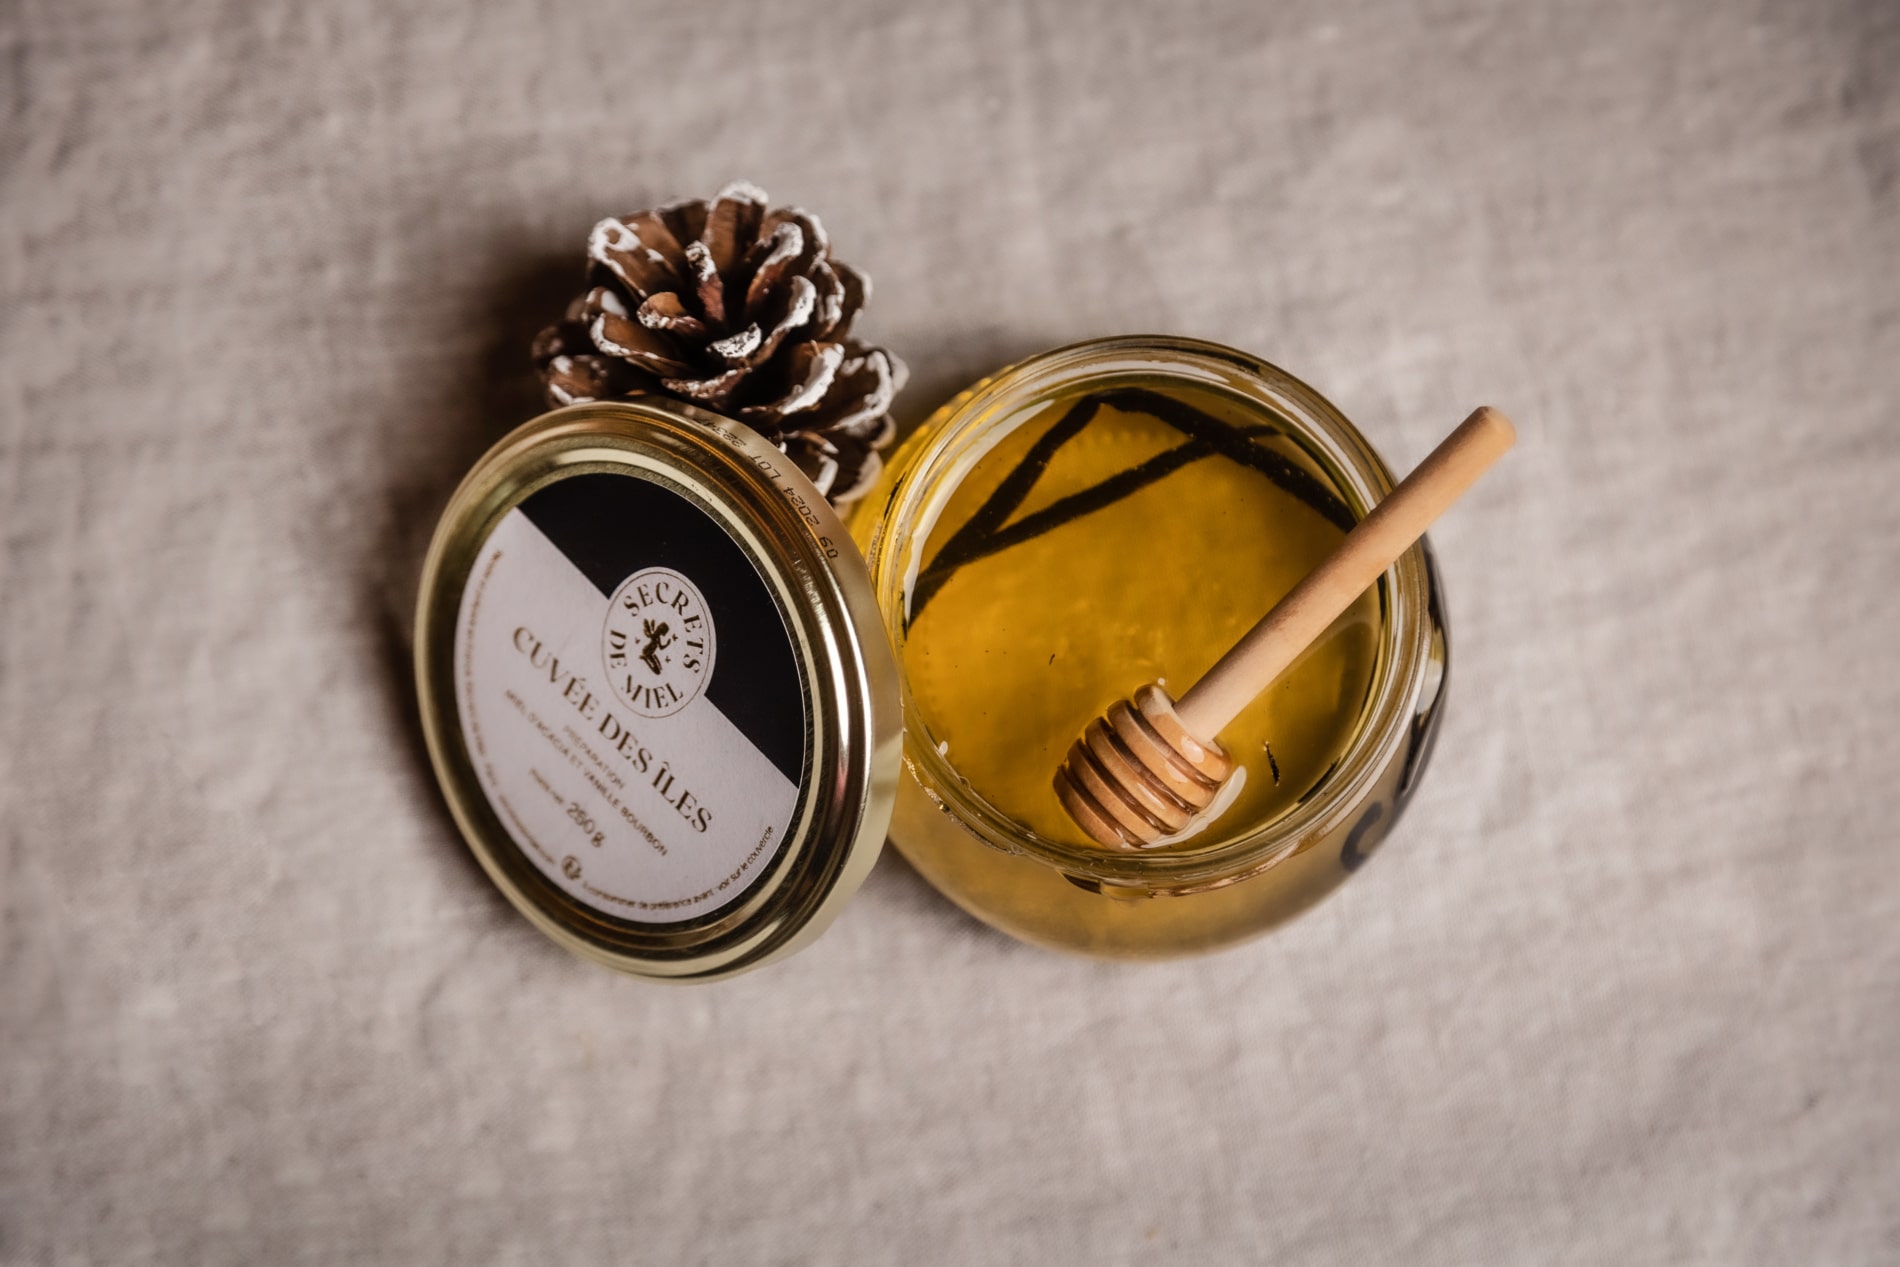 Les secrets du miel, trésor de la ruche (composition, bienfaits)